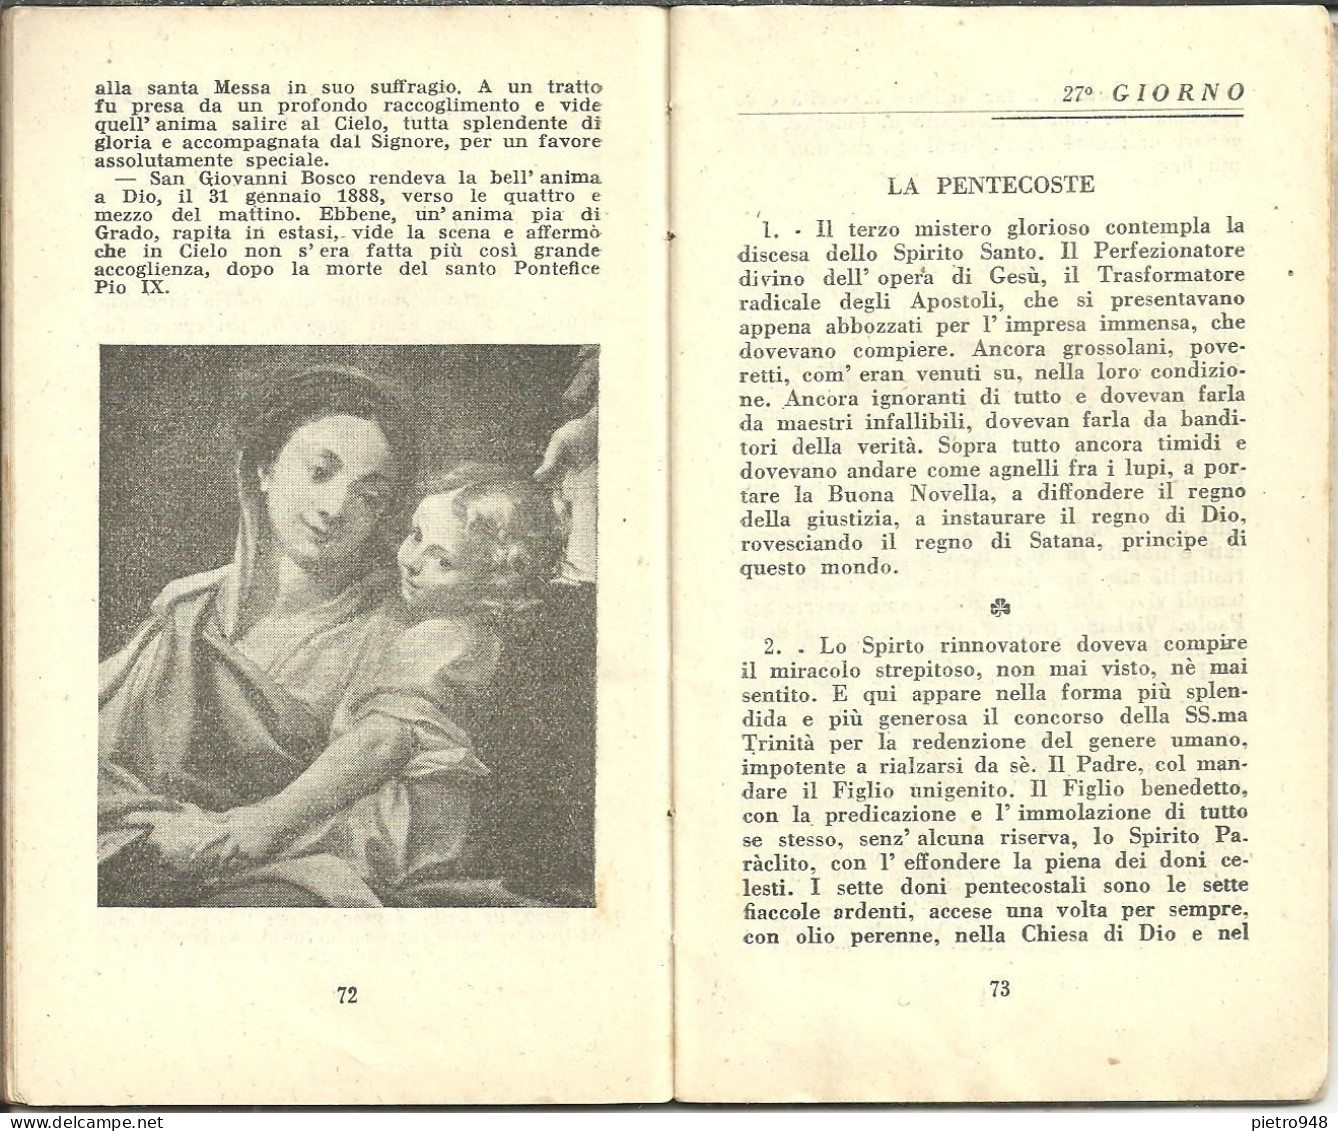 Libro (Libretto) Religioso, "Il Santo Rosario", Sac. N.M. Castellano, Ed. L. Parm, Bologna 1941 - Religion